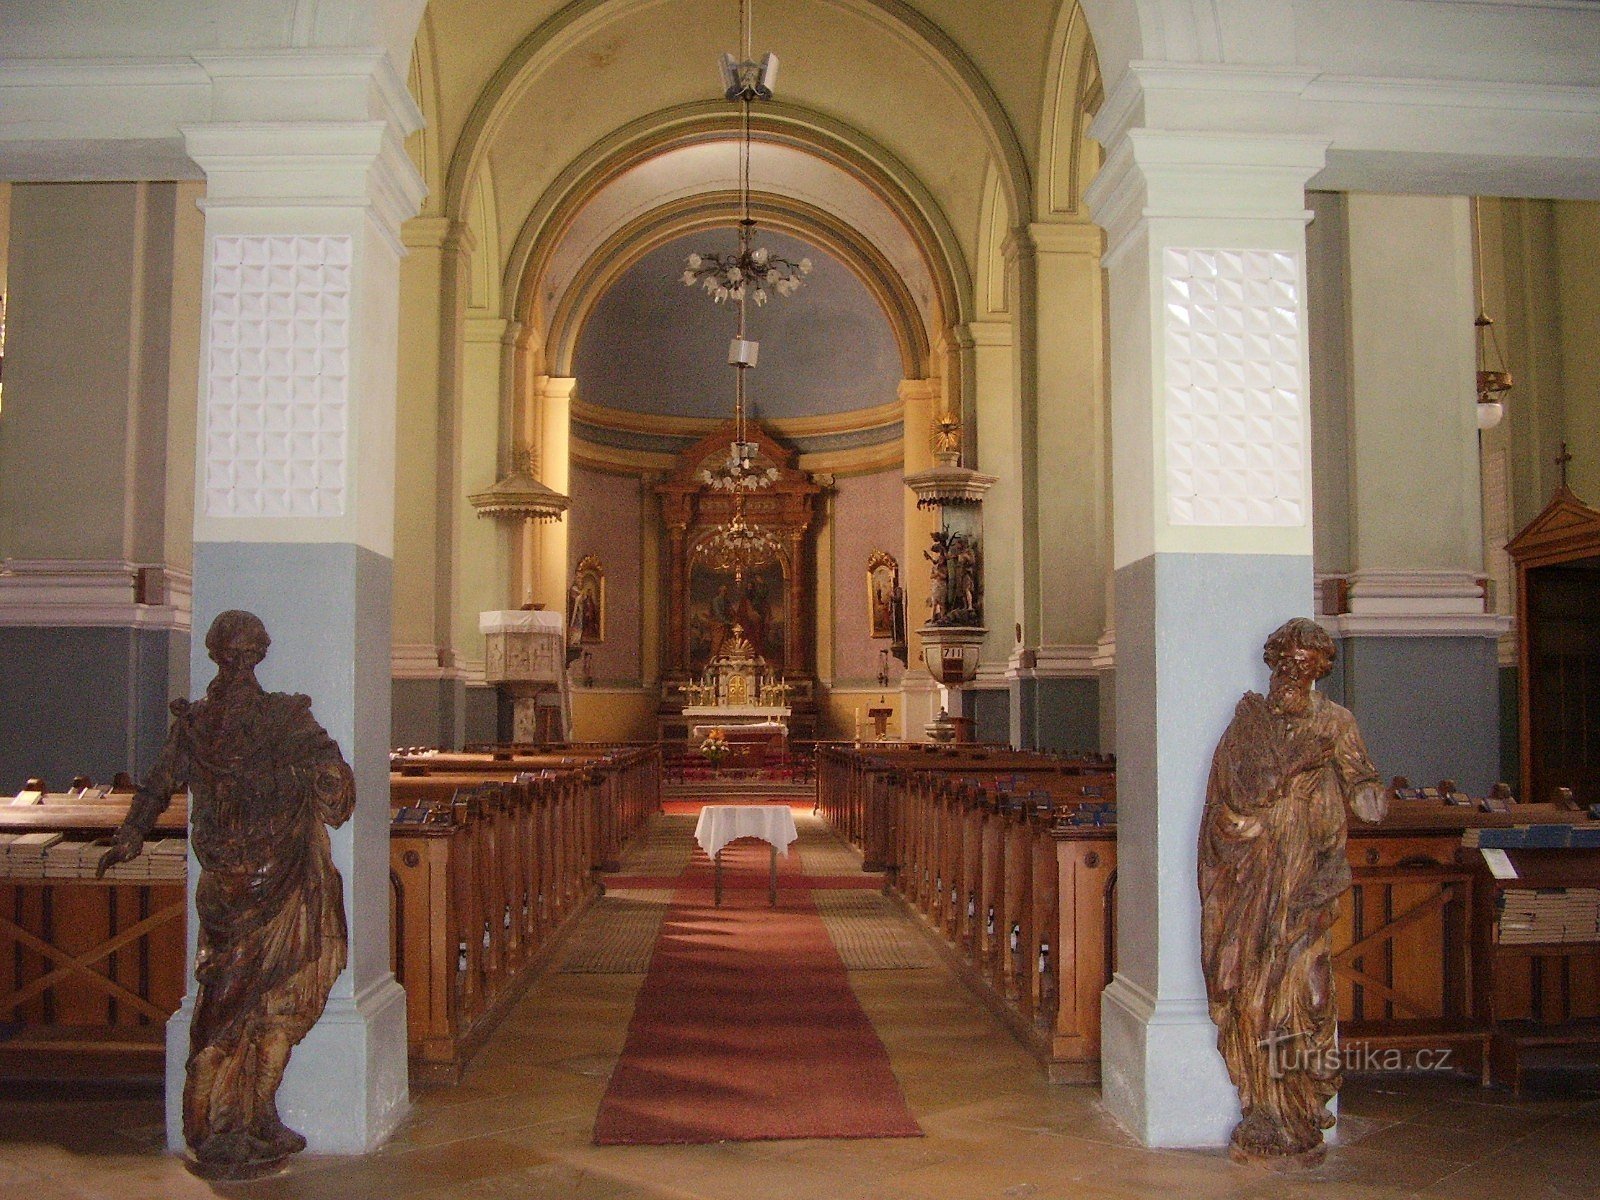 Dolní Kounice - crkva sv. Petra i Pavla